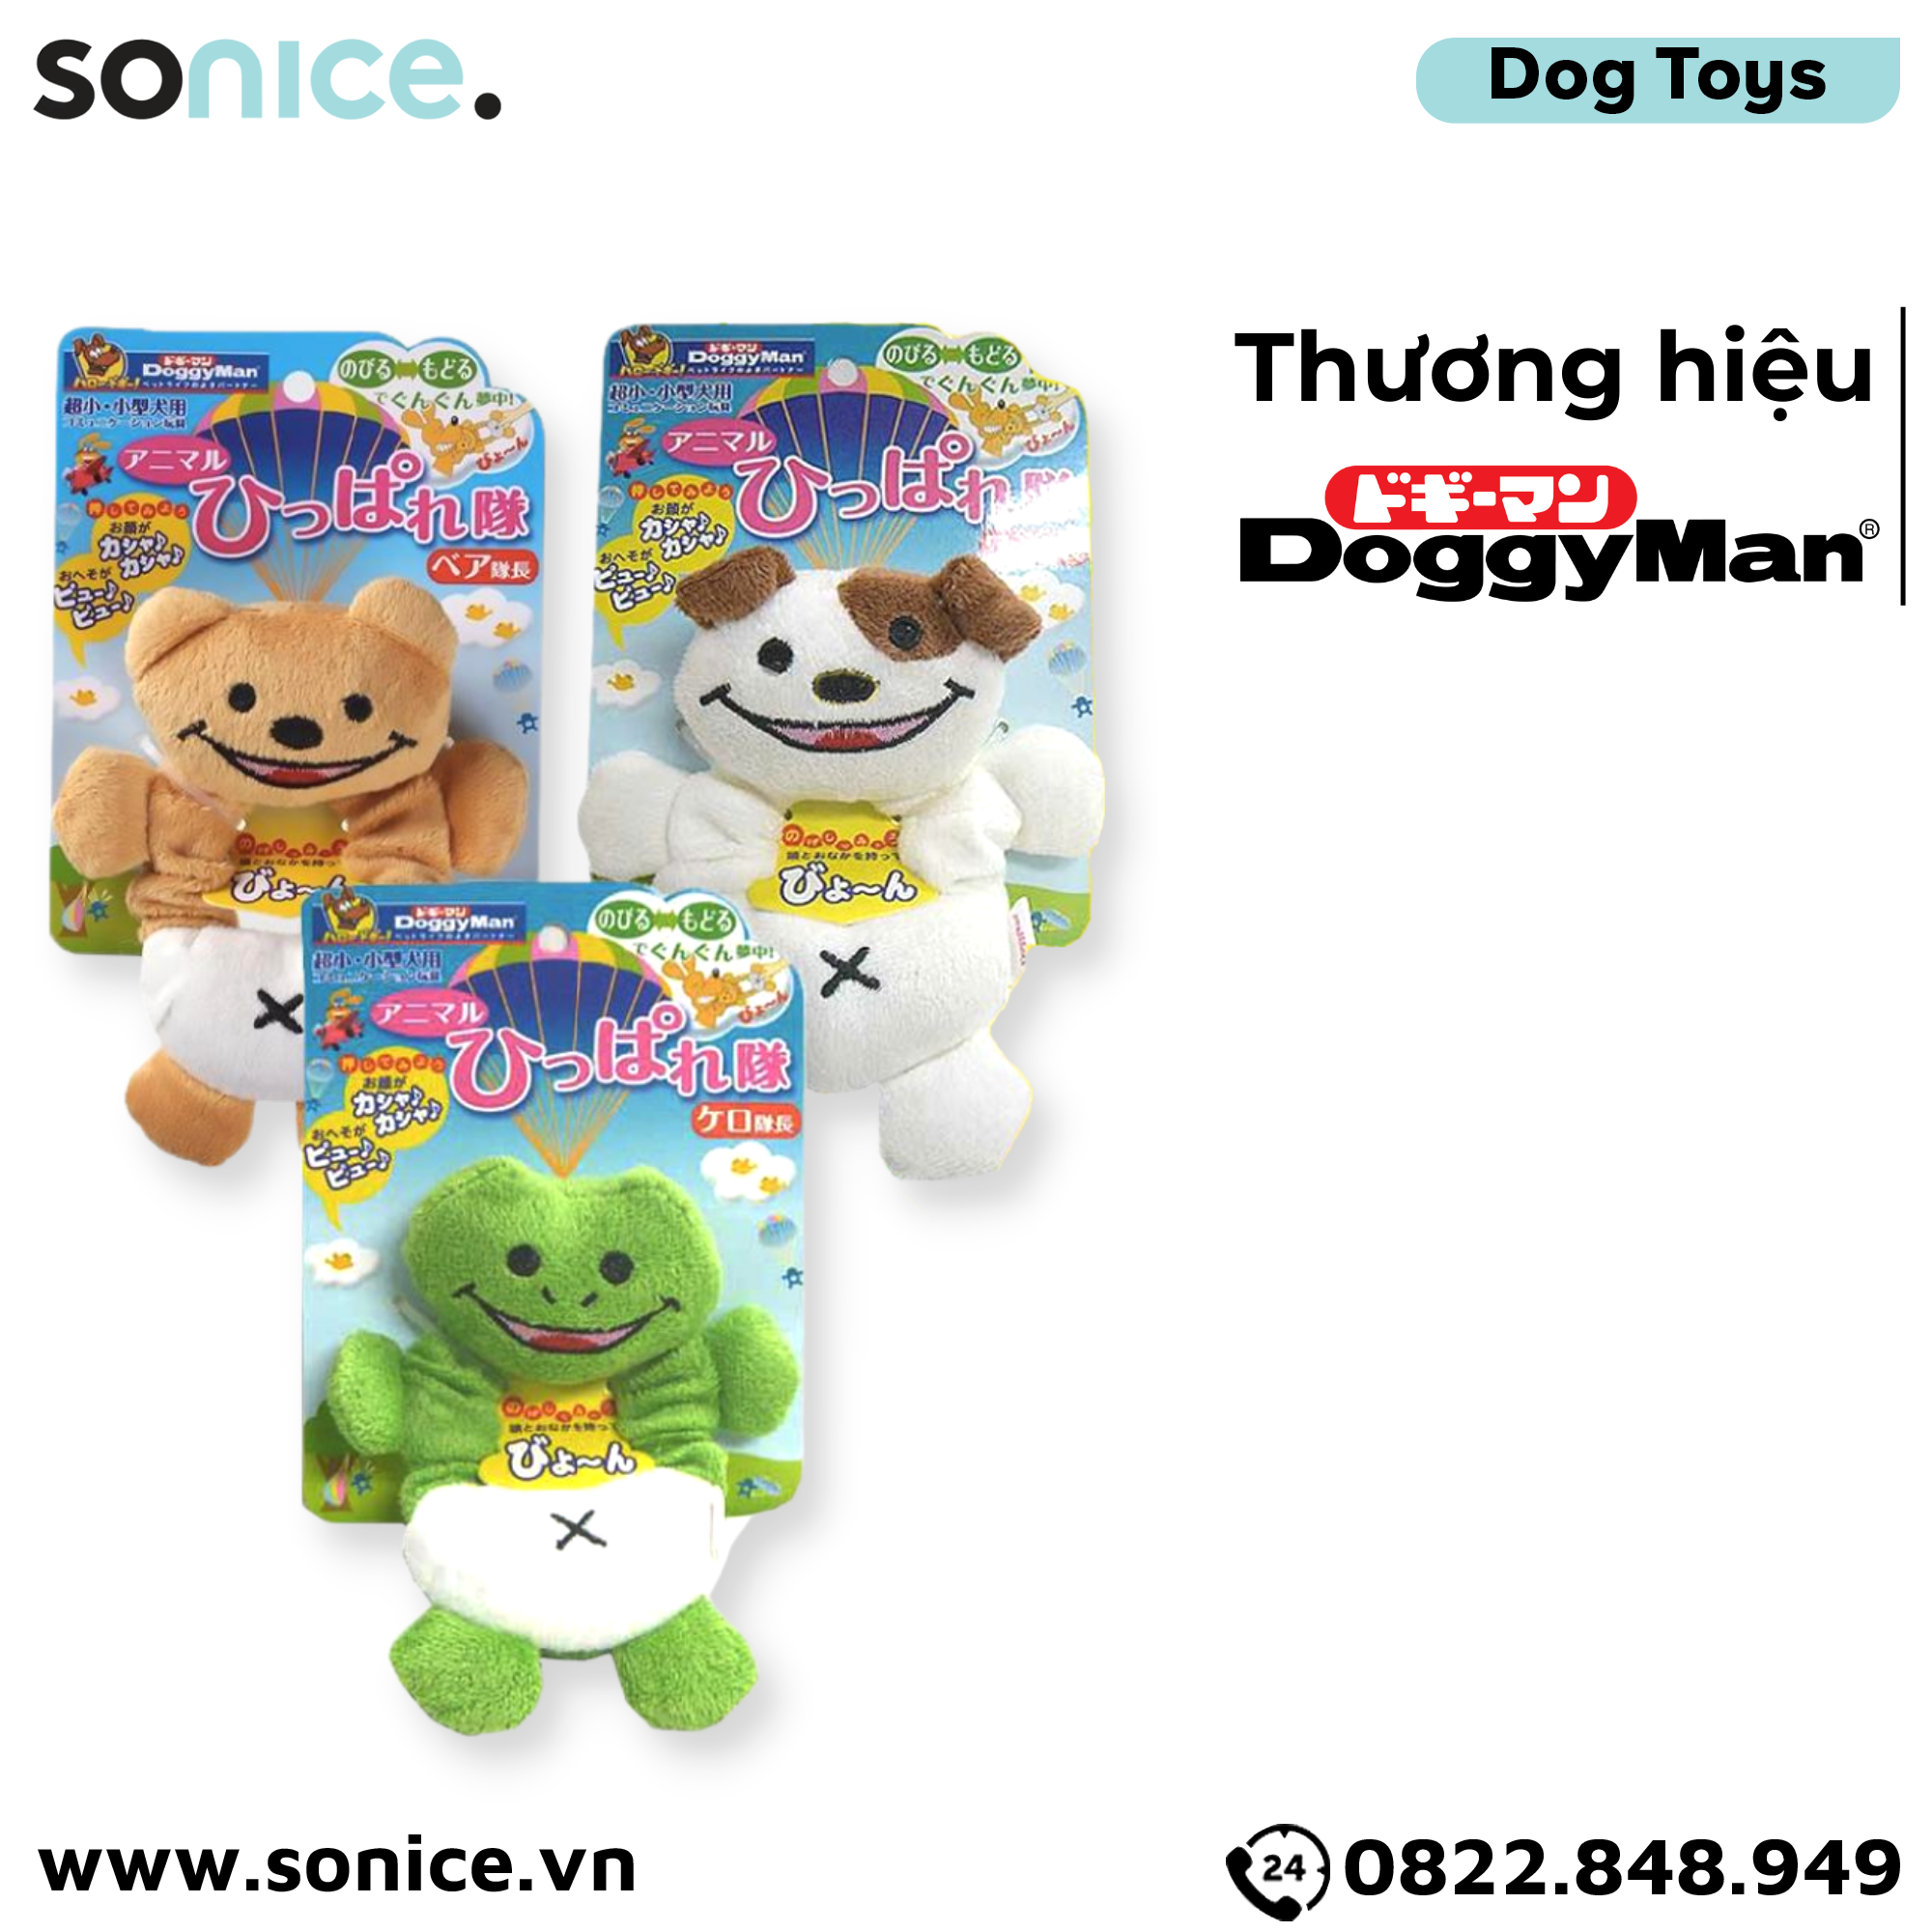  Đồ chơi kéo dãn thú cưng DoggyMan Toys - Hỗ trợ tương tác SONICE. 